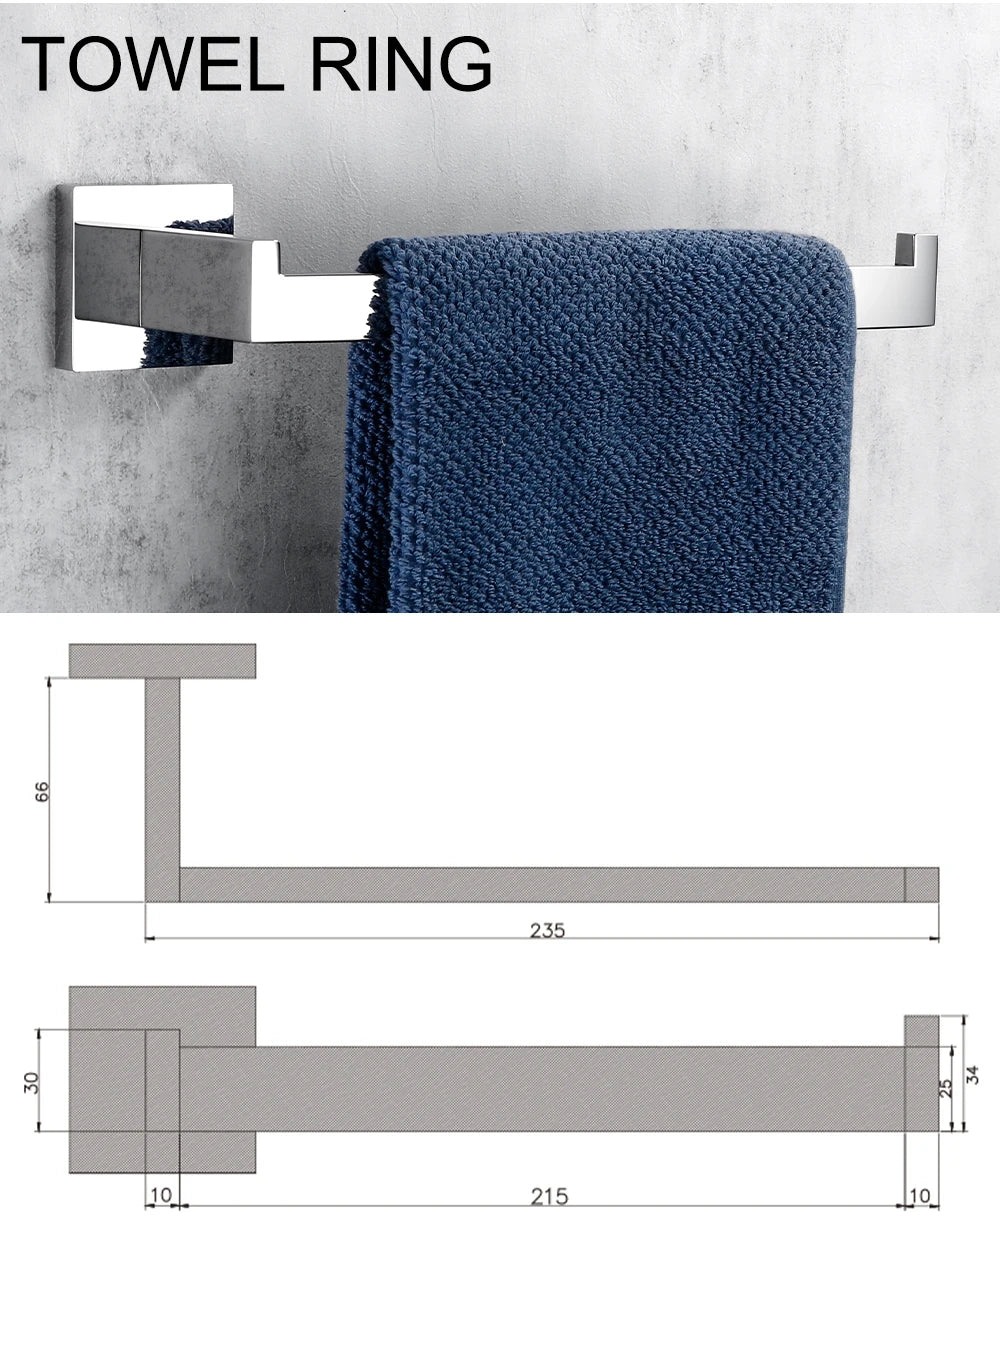 Badezimmer-Zubehörset Bagnolux aus Edelstahl 304 – Handtuchstange, Kleiderhaken, Toilettenpapierhalter, Handtuchring in Polierter Ausführung - Unique Outlet